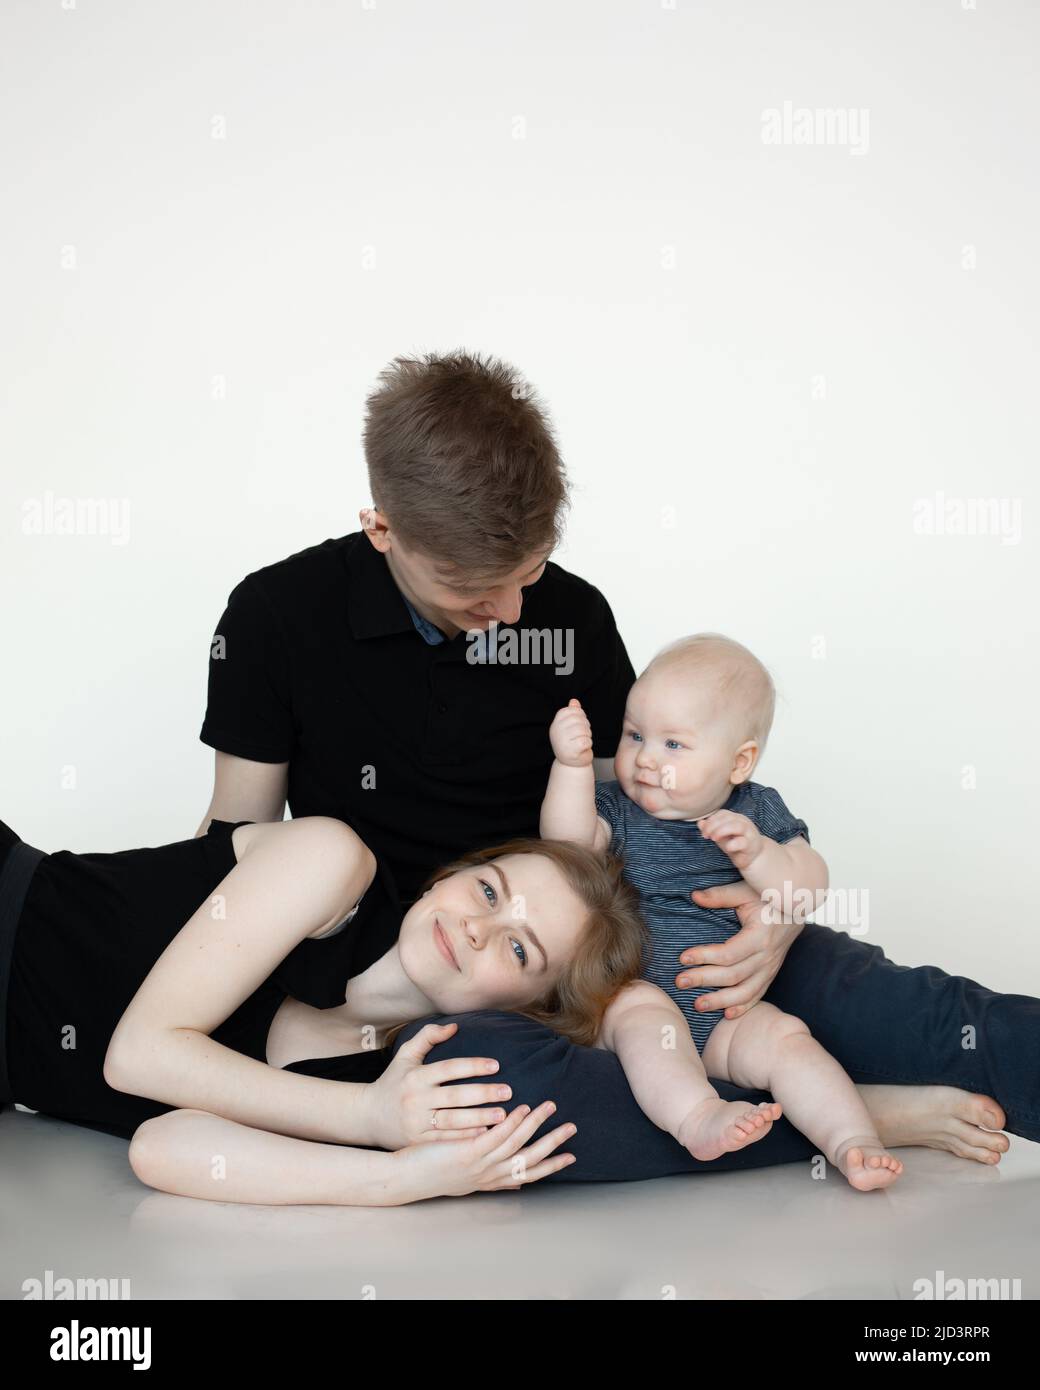 Junge Mama und Papa sitzen und umarmen mit Baby in dunkler Kleidung, lächeln und genießen auf weißem Hintergrund. Nette Beziehung zwischen Eltern und Kleinkind Stockfoto